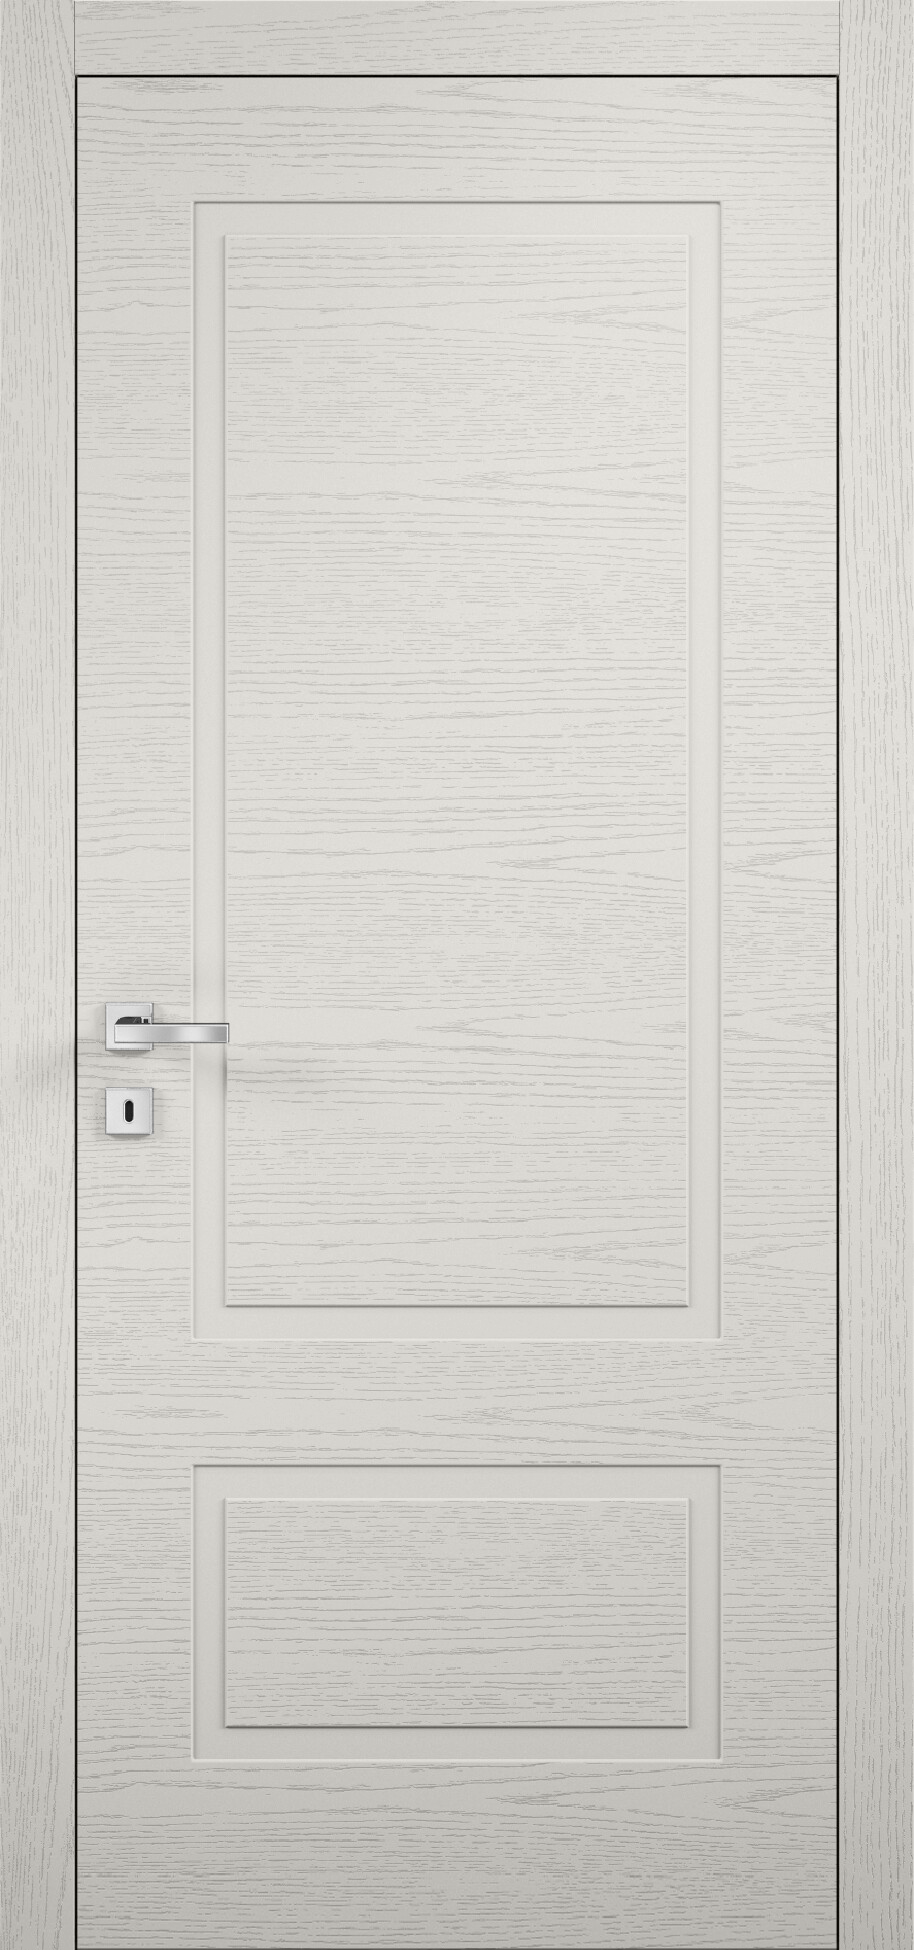 межкомнатные двери эмалированная межкомнатная дверь glamour 104 эмаль слоновая кость купить в москве, цены